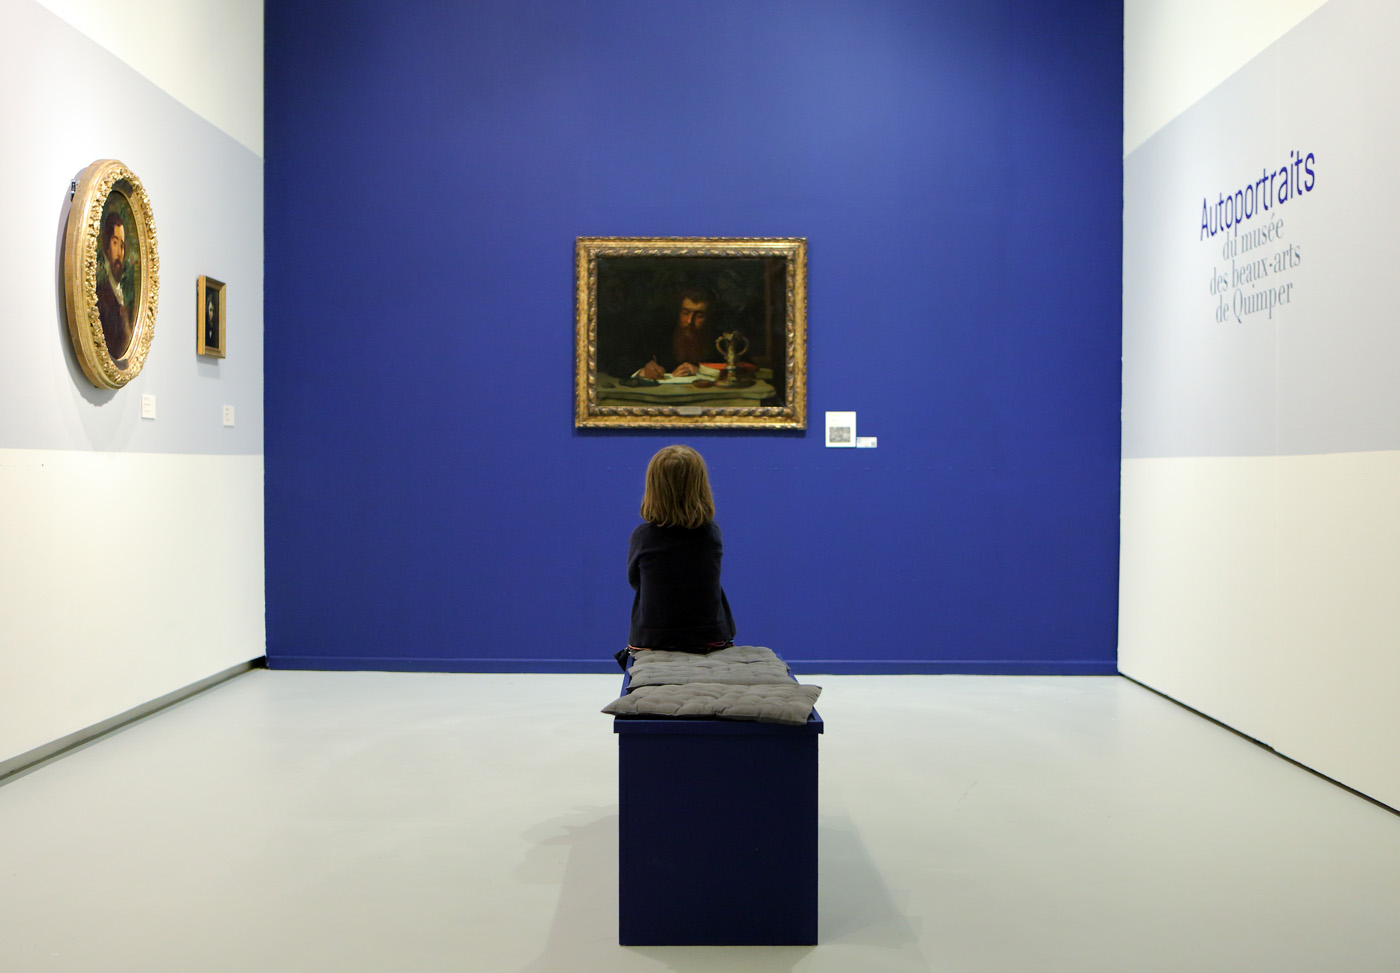 Autoportraits du musée d’Orsay : l'exposition événement est ouverte